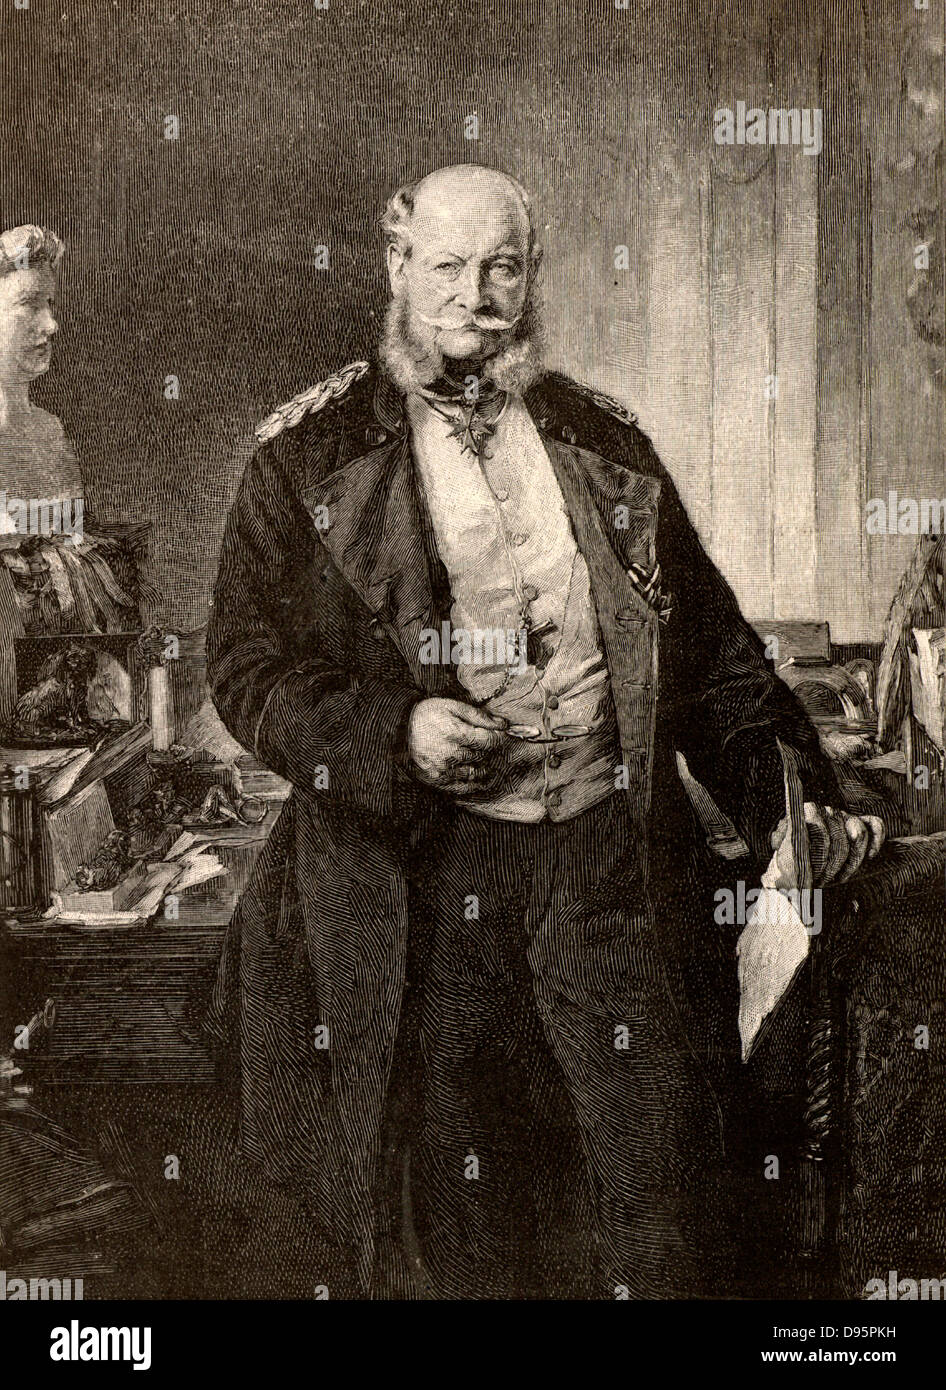 Wilhelm I (Wilhelm I - 1797-1888) siebte König von Preußen und ersten Kaiser von Deutschland von 1861. Gravur von "Der englische Illustrierte" (London, 1888). Stockfoto